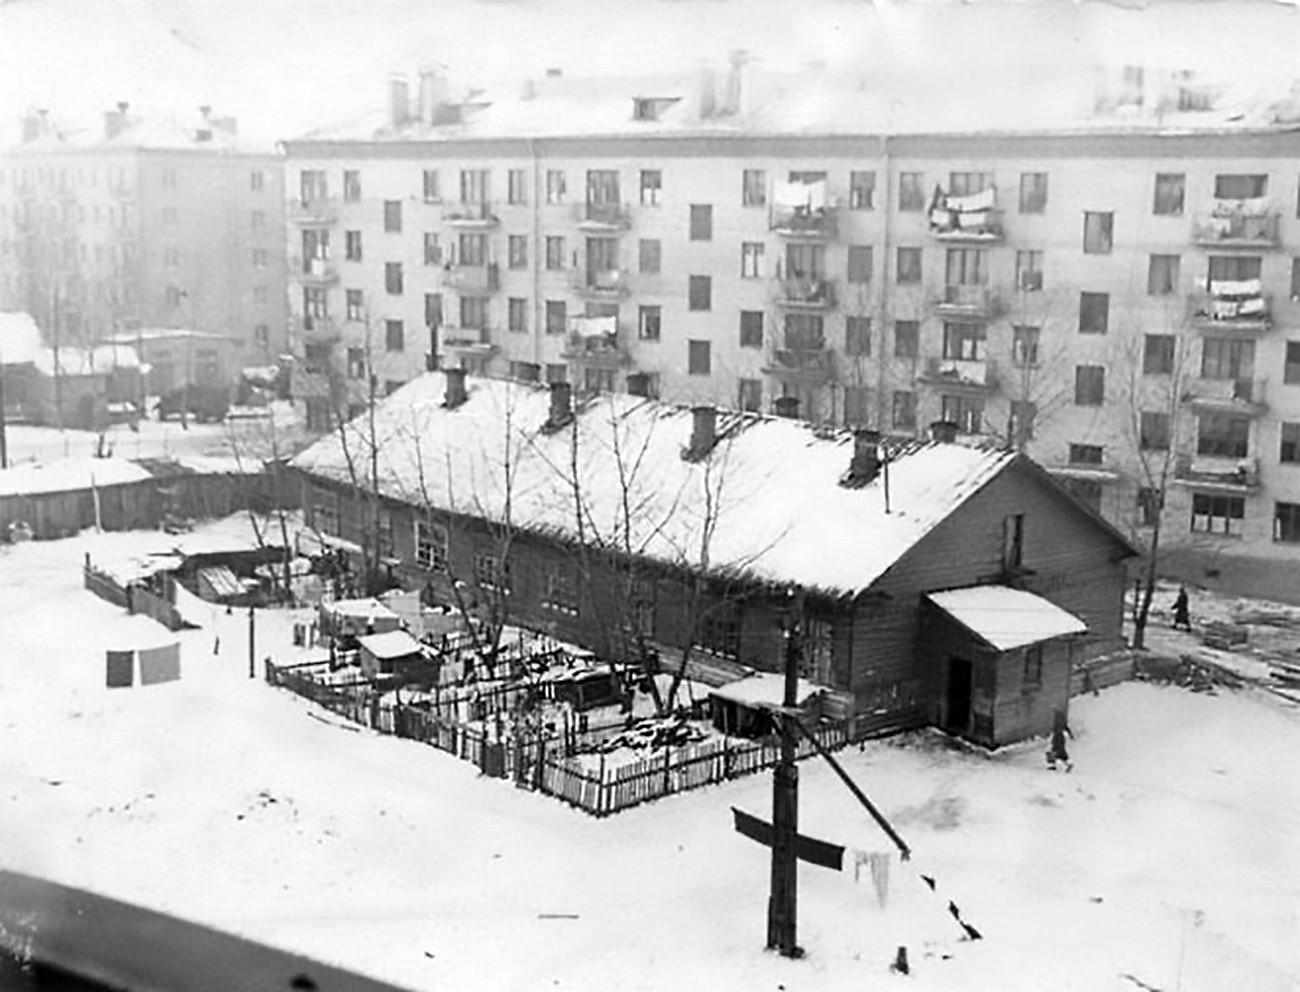 Rumah-rumah kayu dan barak tetap berada di distrik yang dekat tak jauh dari pusat kota sampai tahun 1960-an. Misalnya, seperti inilah rupa Distirk Tekstilshchiki lebih dari 50 tahun lalu.